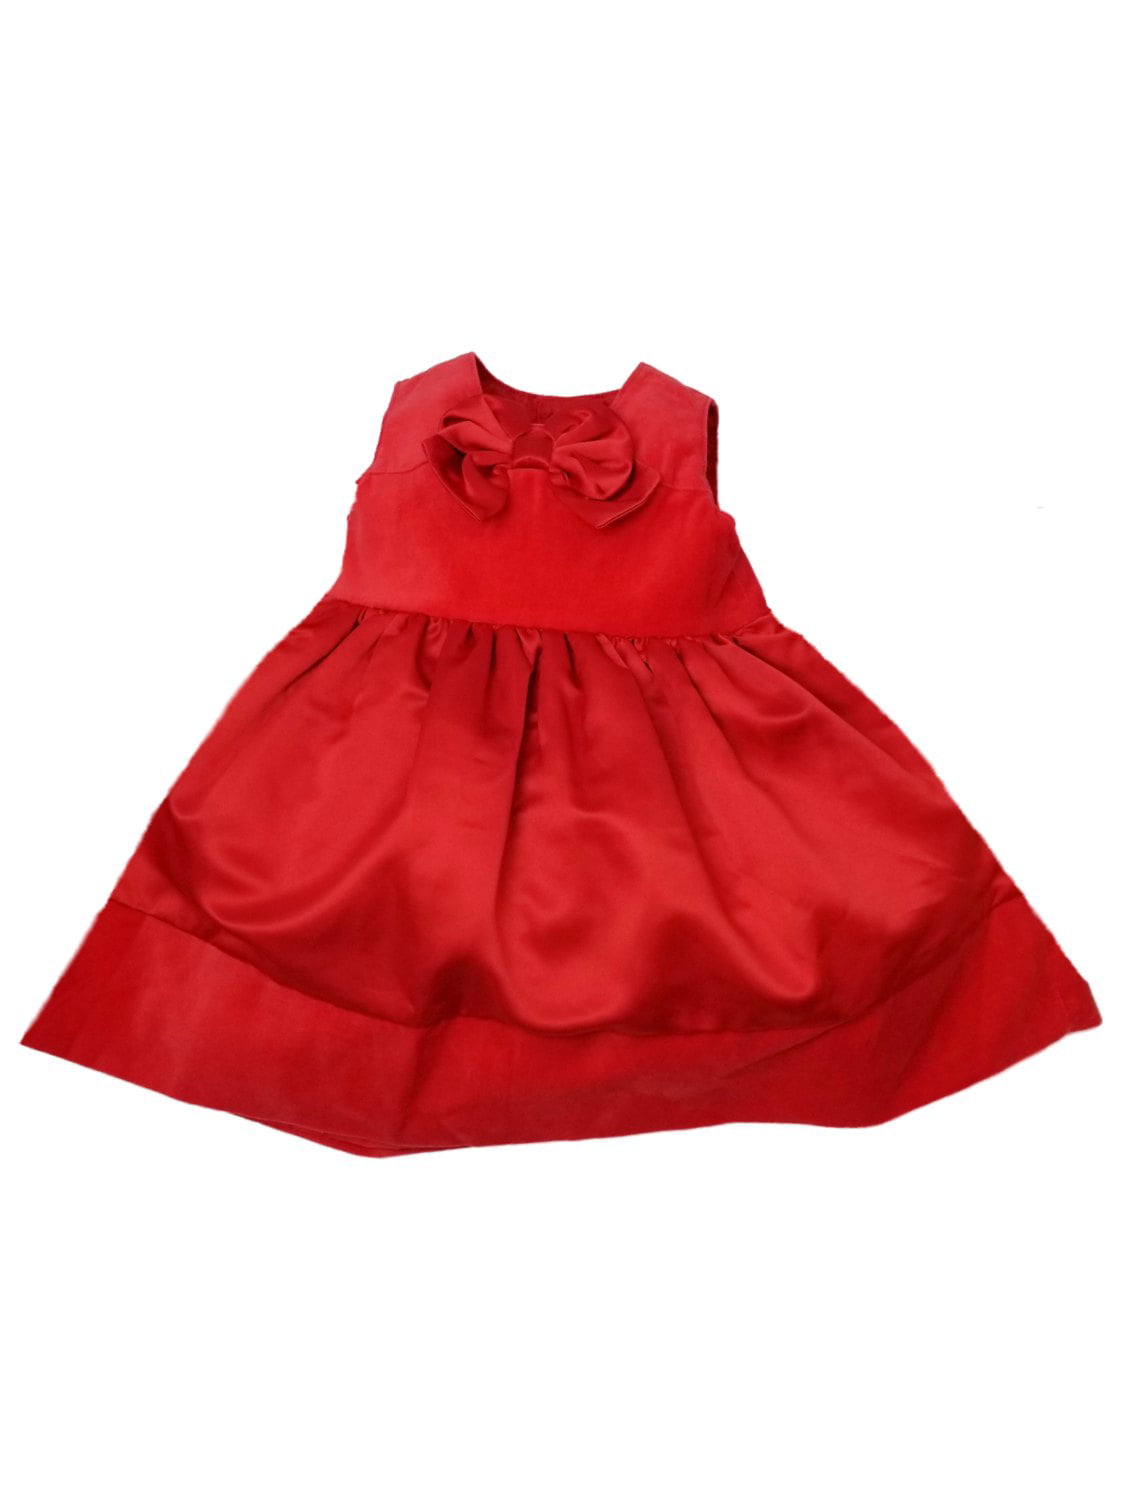 red velvet infant christmas dress